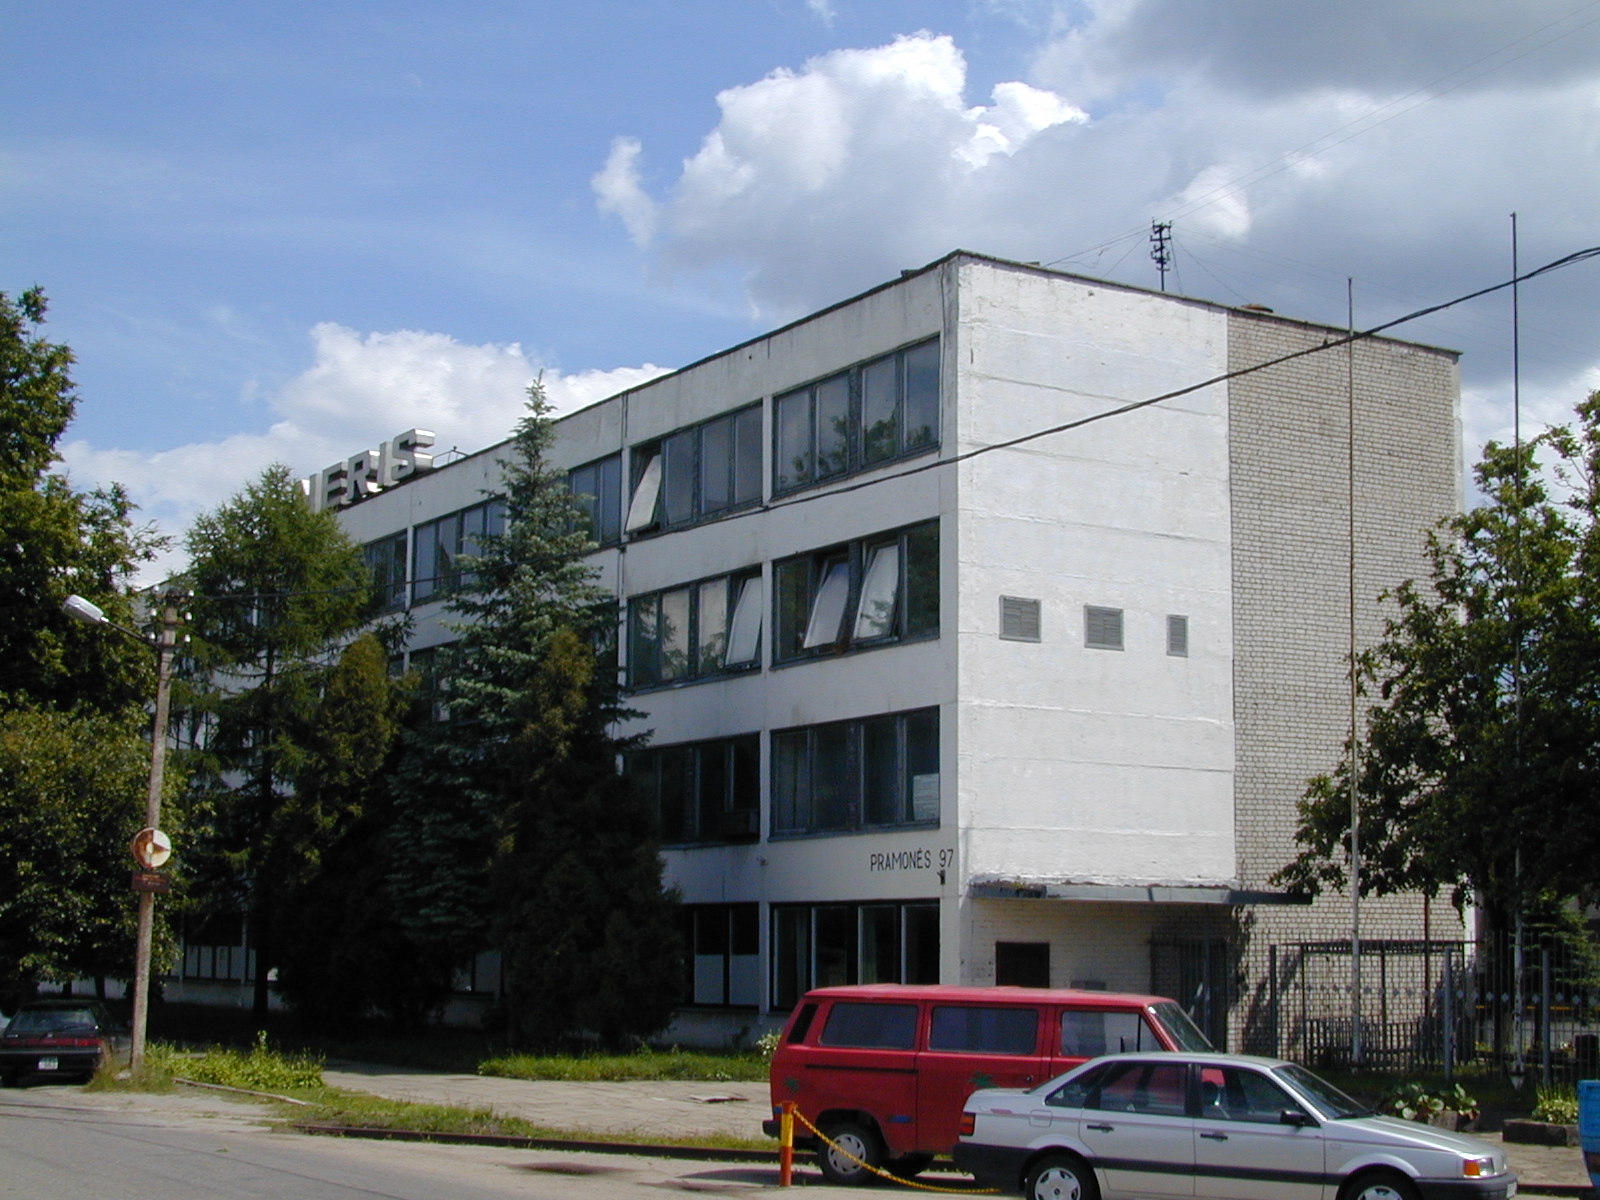 Pramonės g. 97, Vilnius